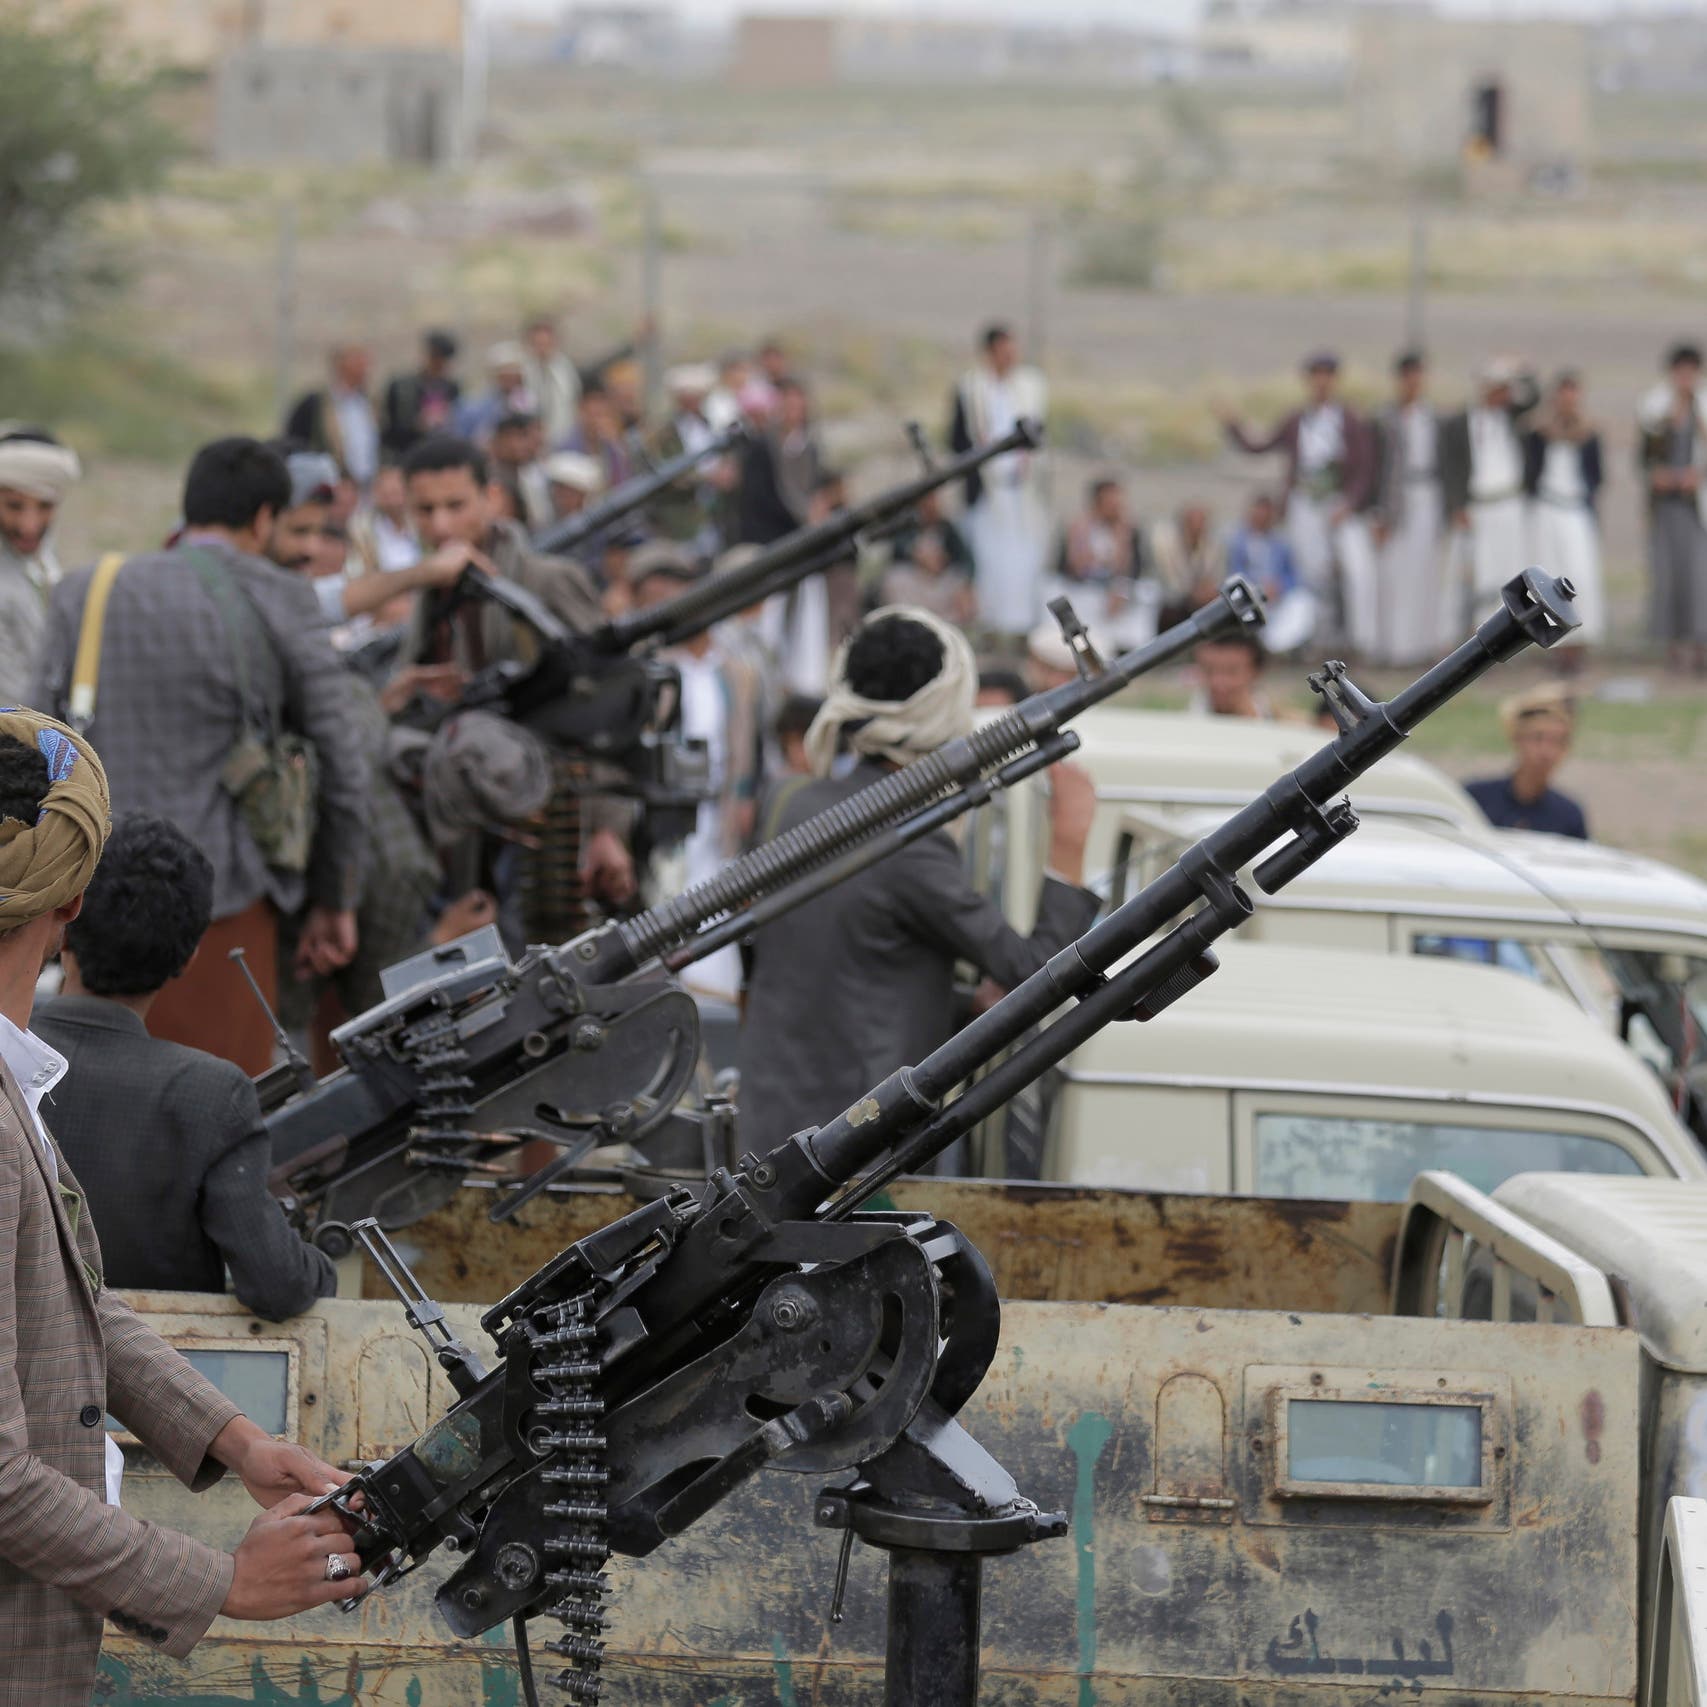 الضالع.. سقوط عشرات القتلى والجرحى الحوثيين بينهم قيادات